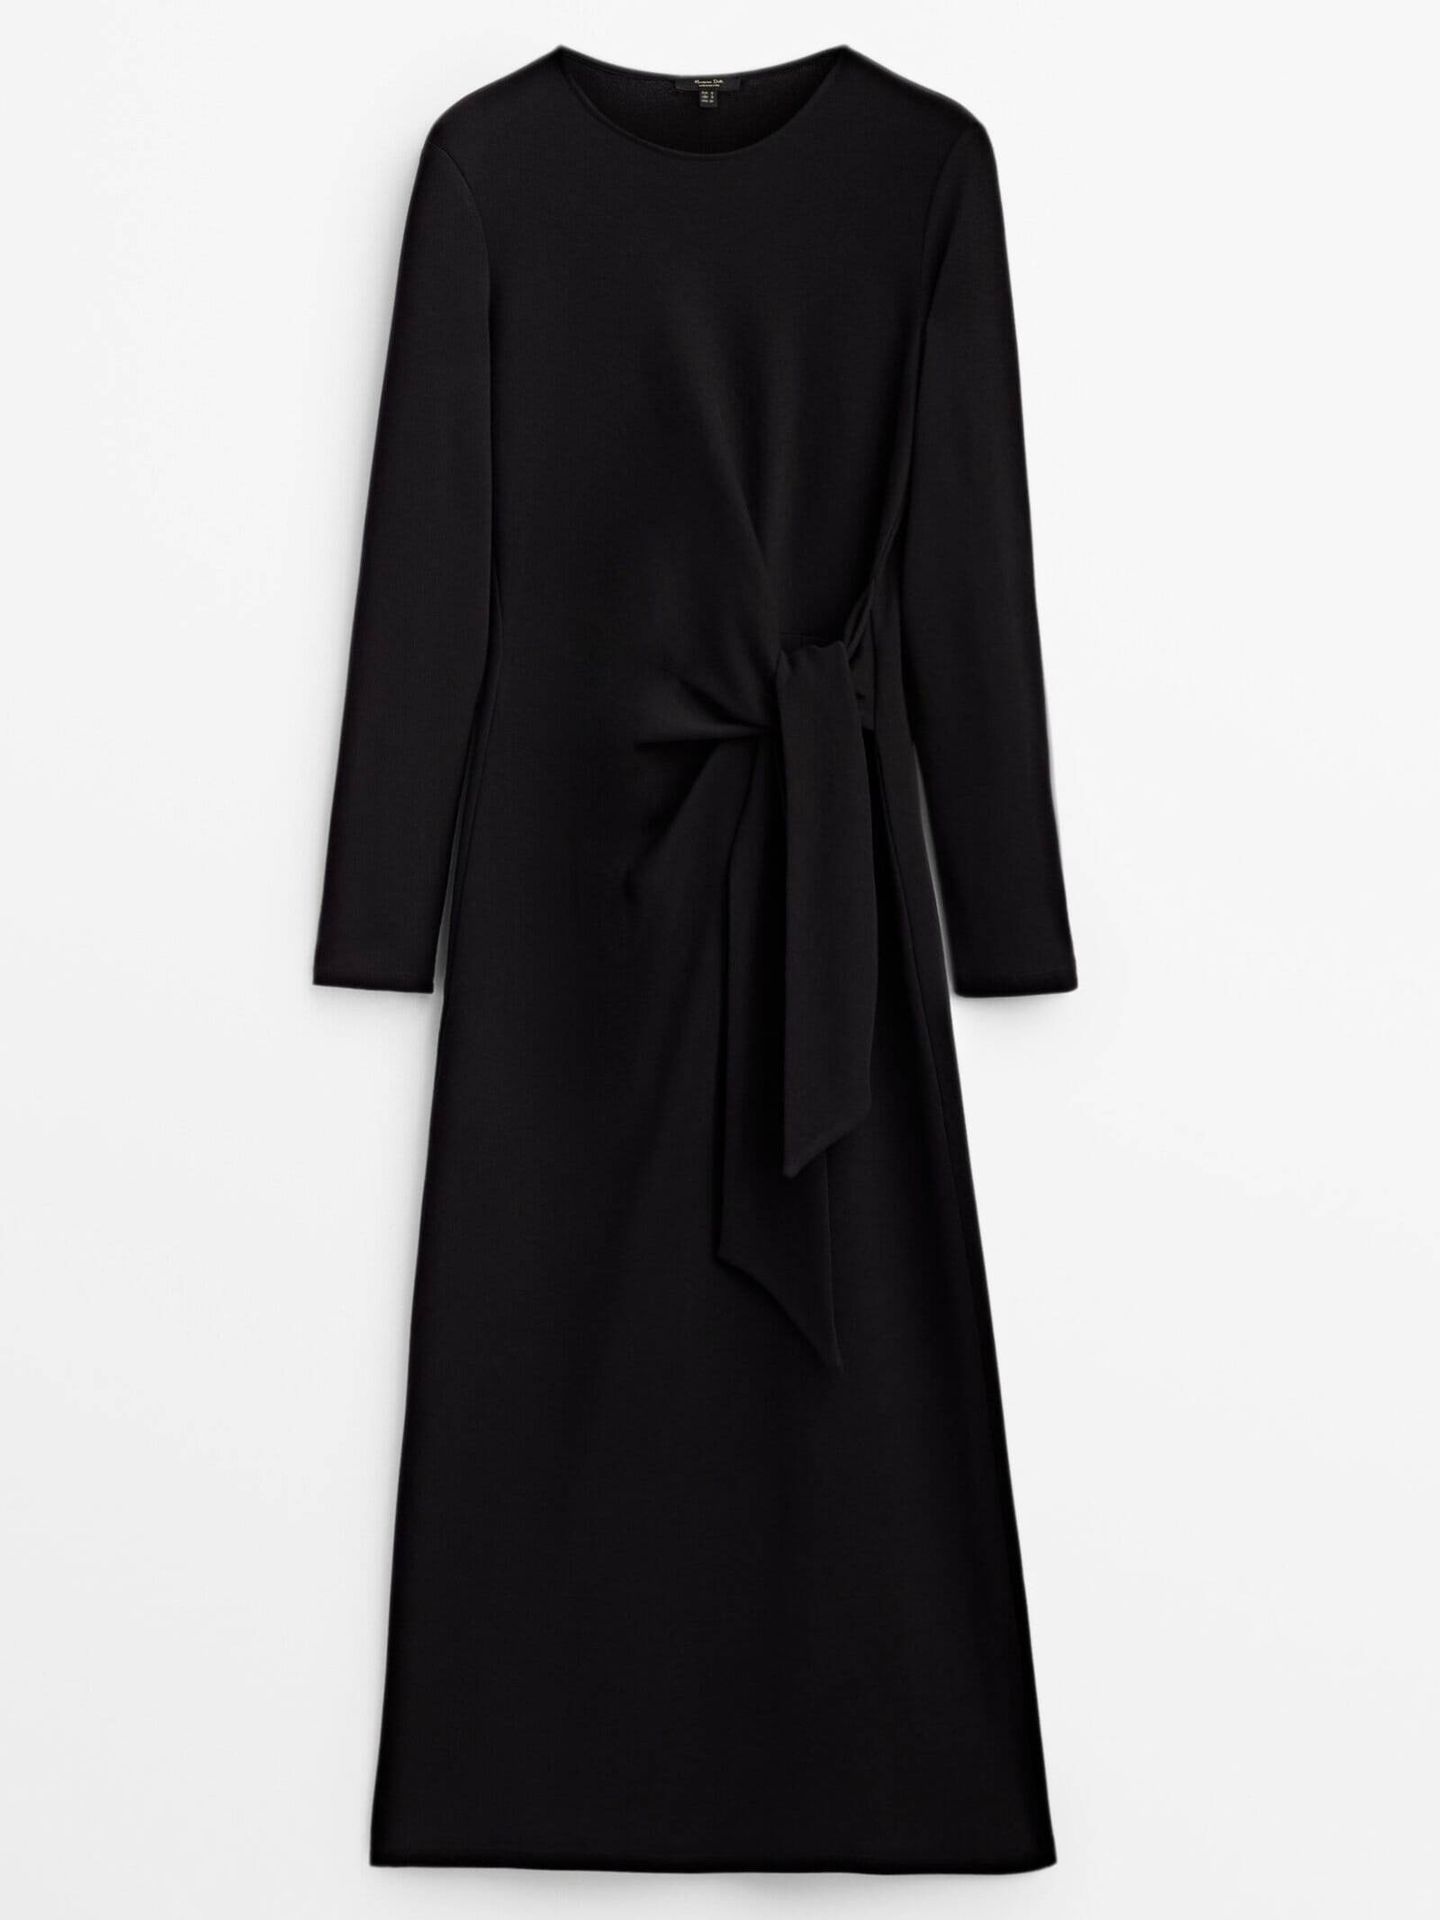 El vestido negro de Massimo Dutti (con efecto una talla menos) que combina genial con botas altas. (Cortesía)